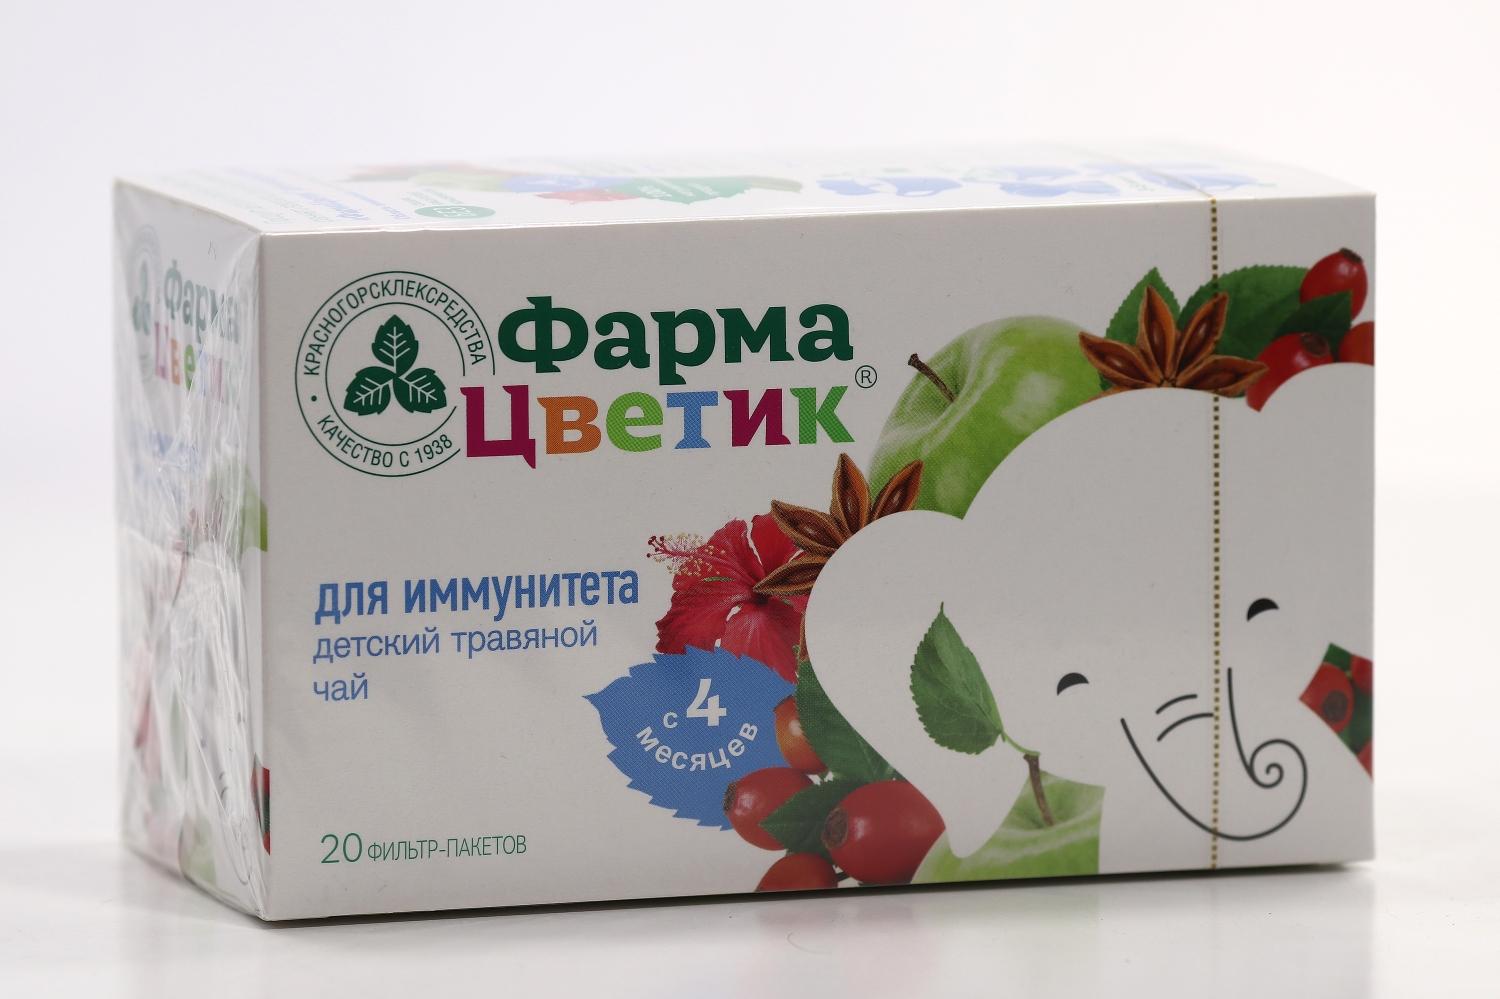 Чай ФармаЦветик д/иммунитета травяной дет 1,5 г, 20 шт, фильтр-пакет